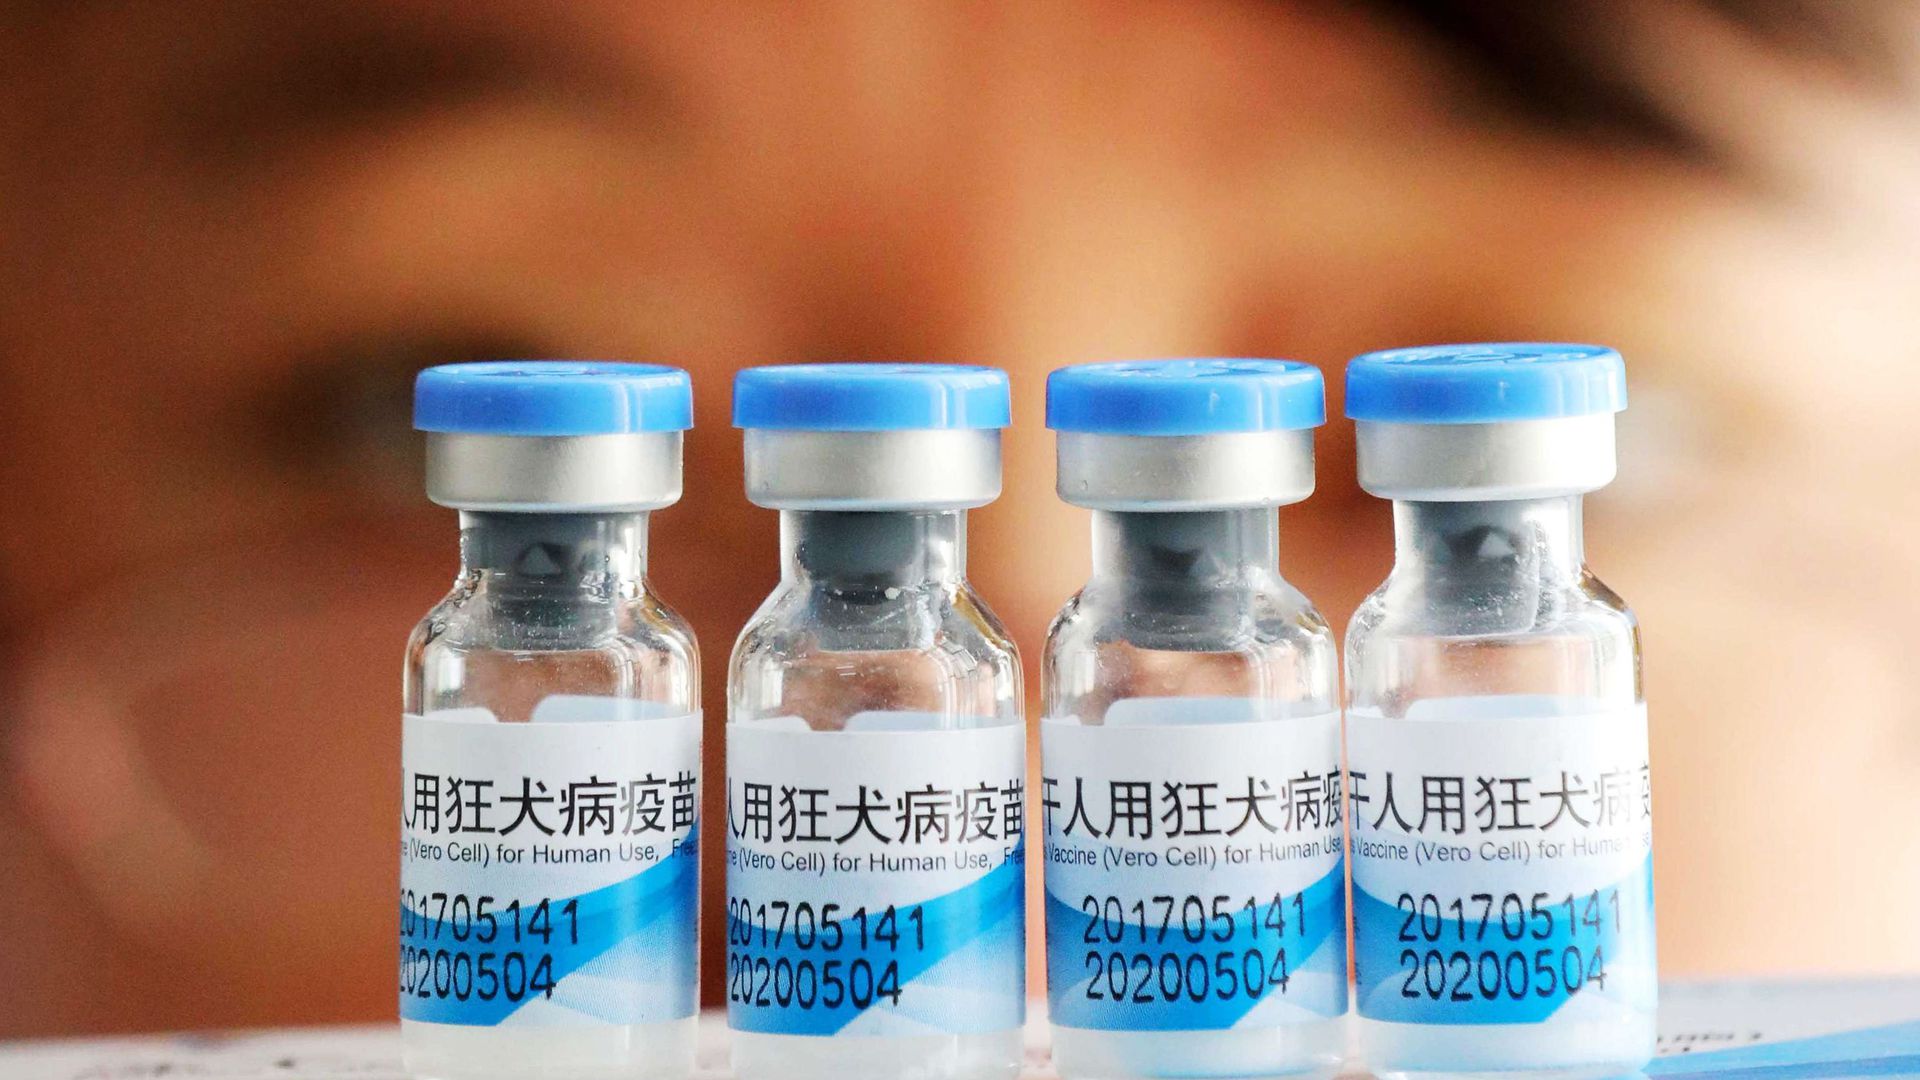 Trung Quốc: Hàng trăm nghìn lọ vắc-xin giả được cung cấp cho trẻ em gây phẫn nộ dư luận